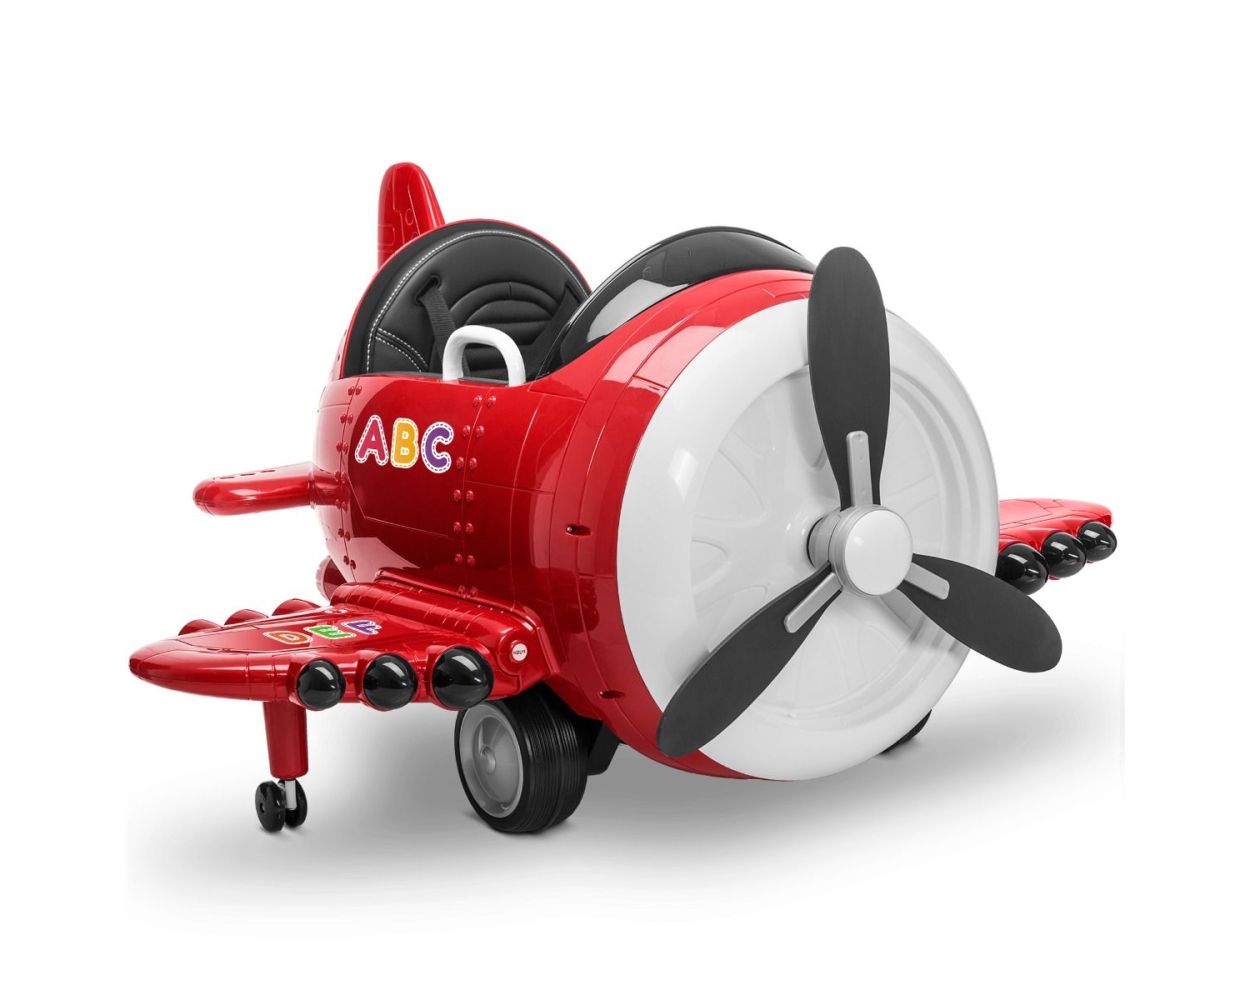 Kinder Spielzeug Flugzeug mit Musik & LED Licht Flieger Airlines Jet Plane Toy 